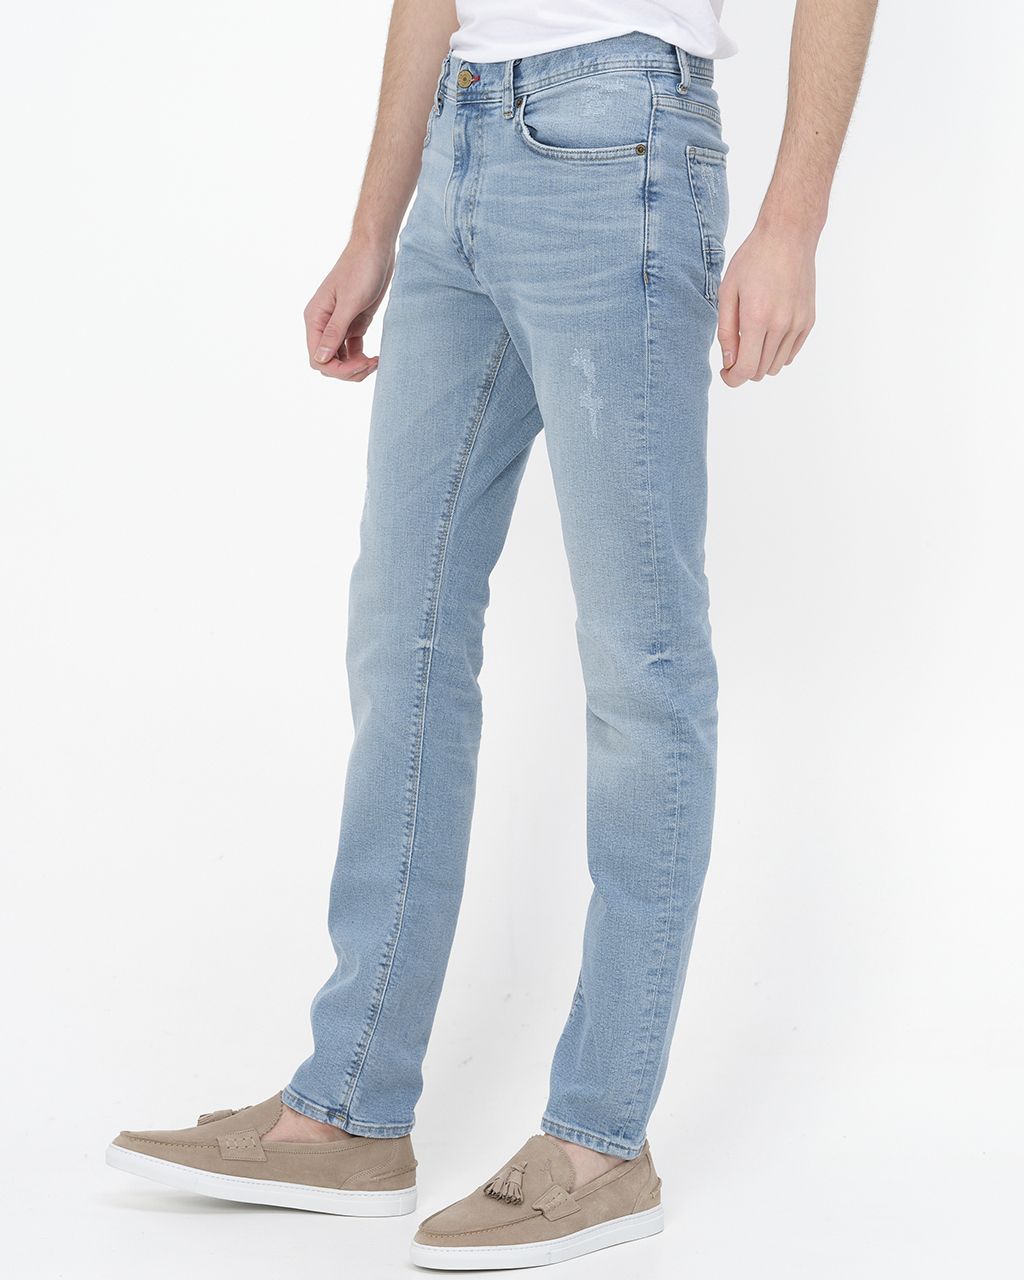 Tommy Hilfiger Menswear Jeans Blauw 075001-001-30/32